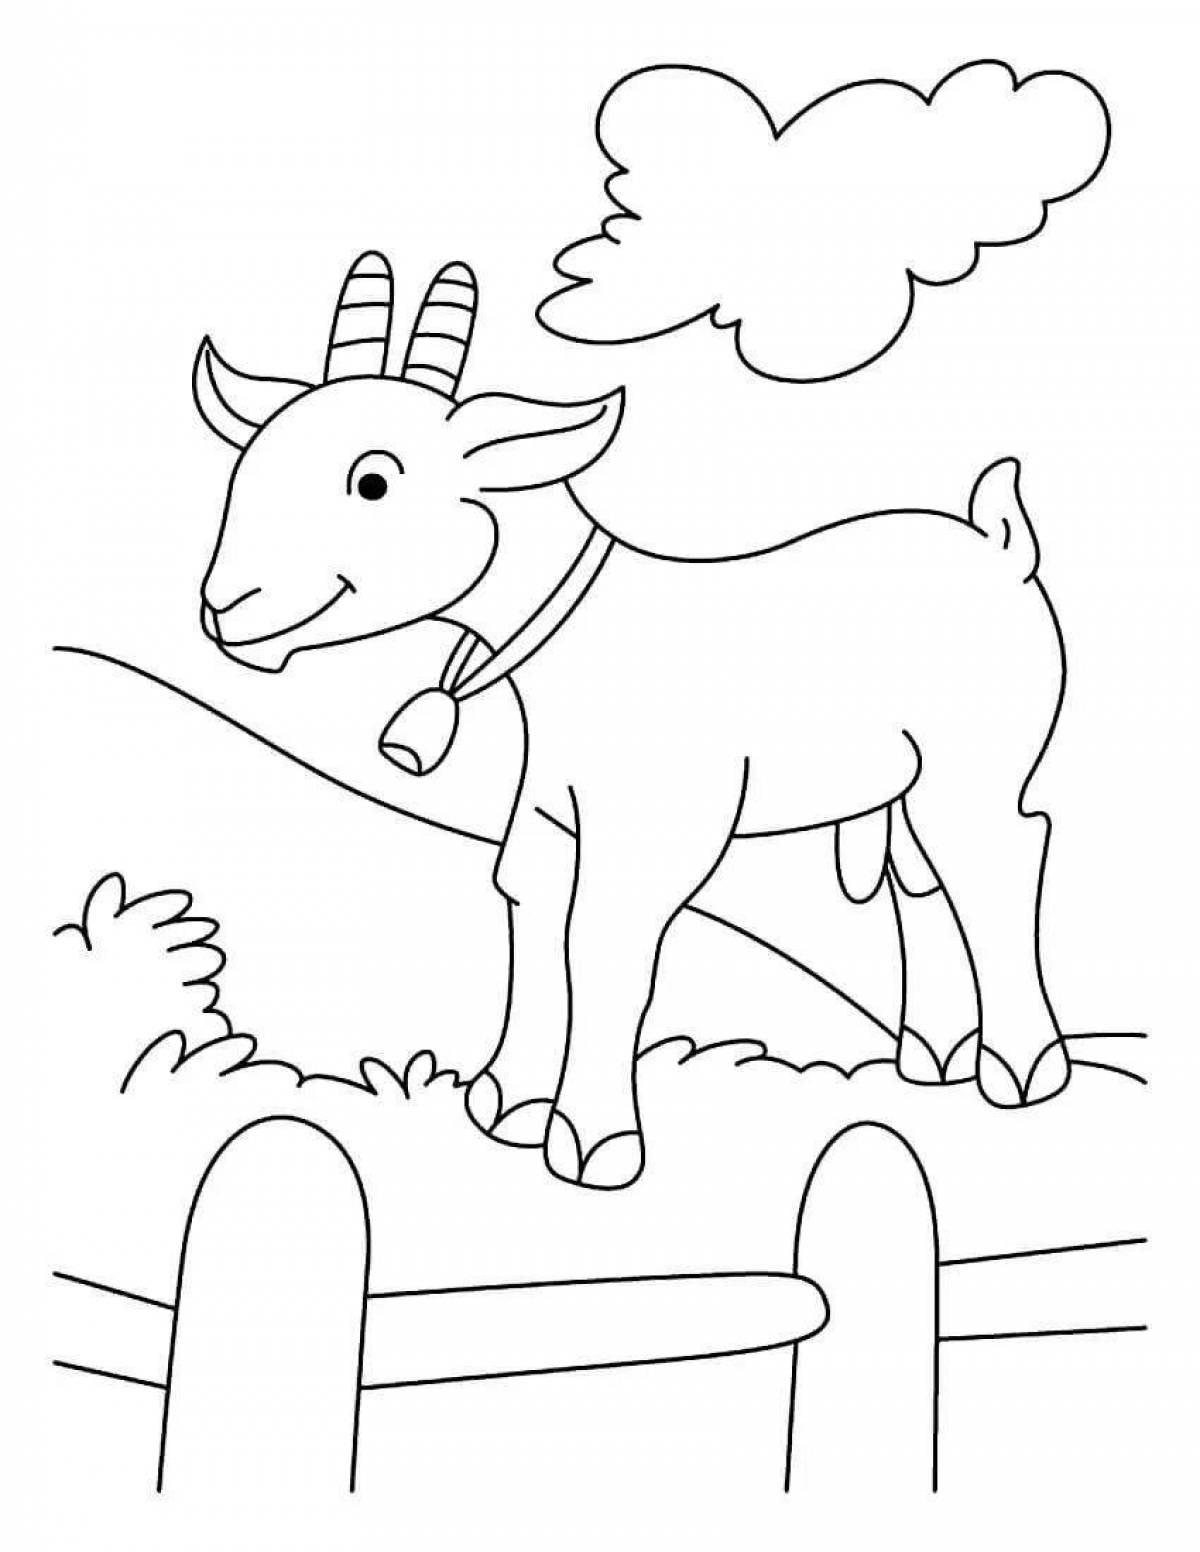 Раскраска коза. Распечатать картинки для детей